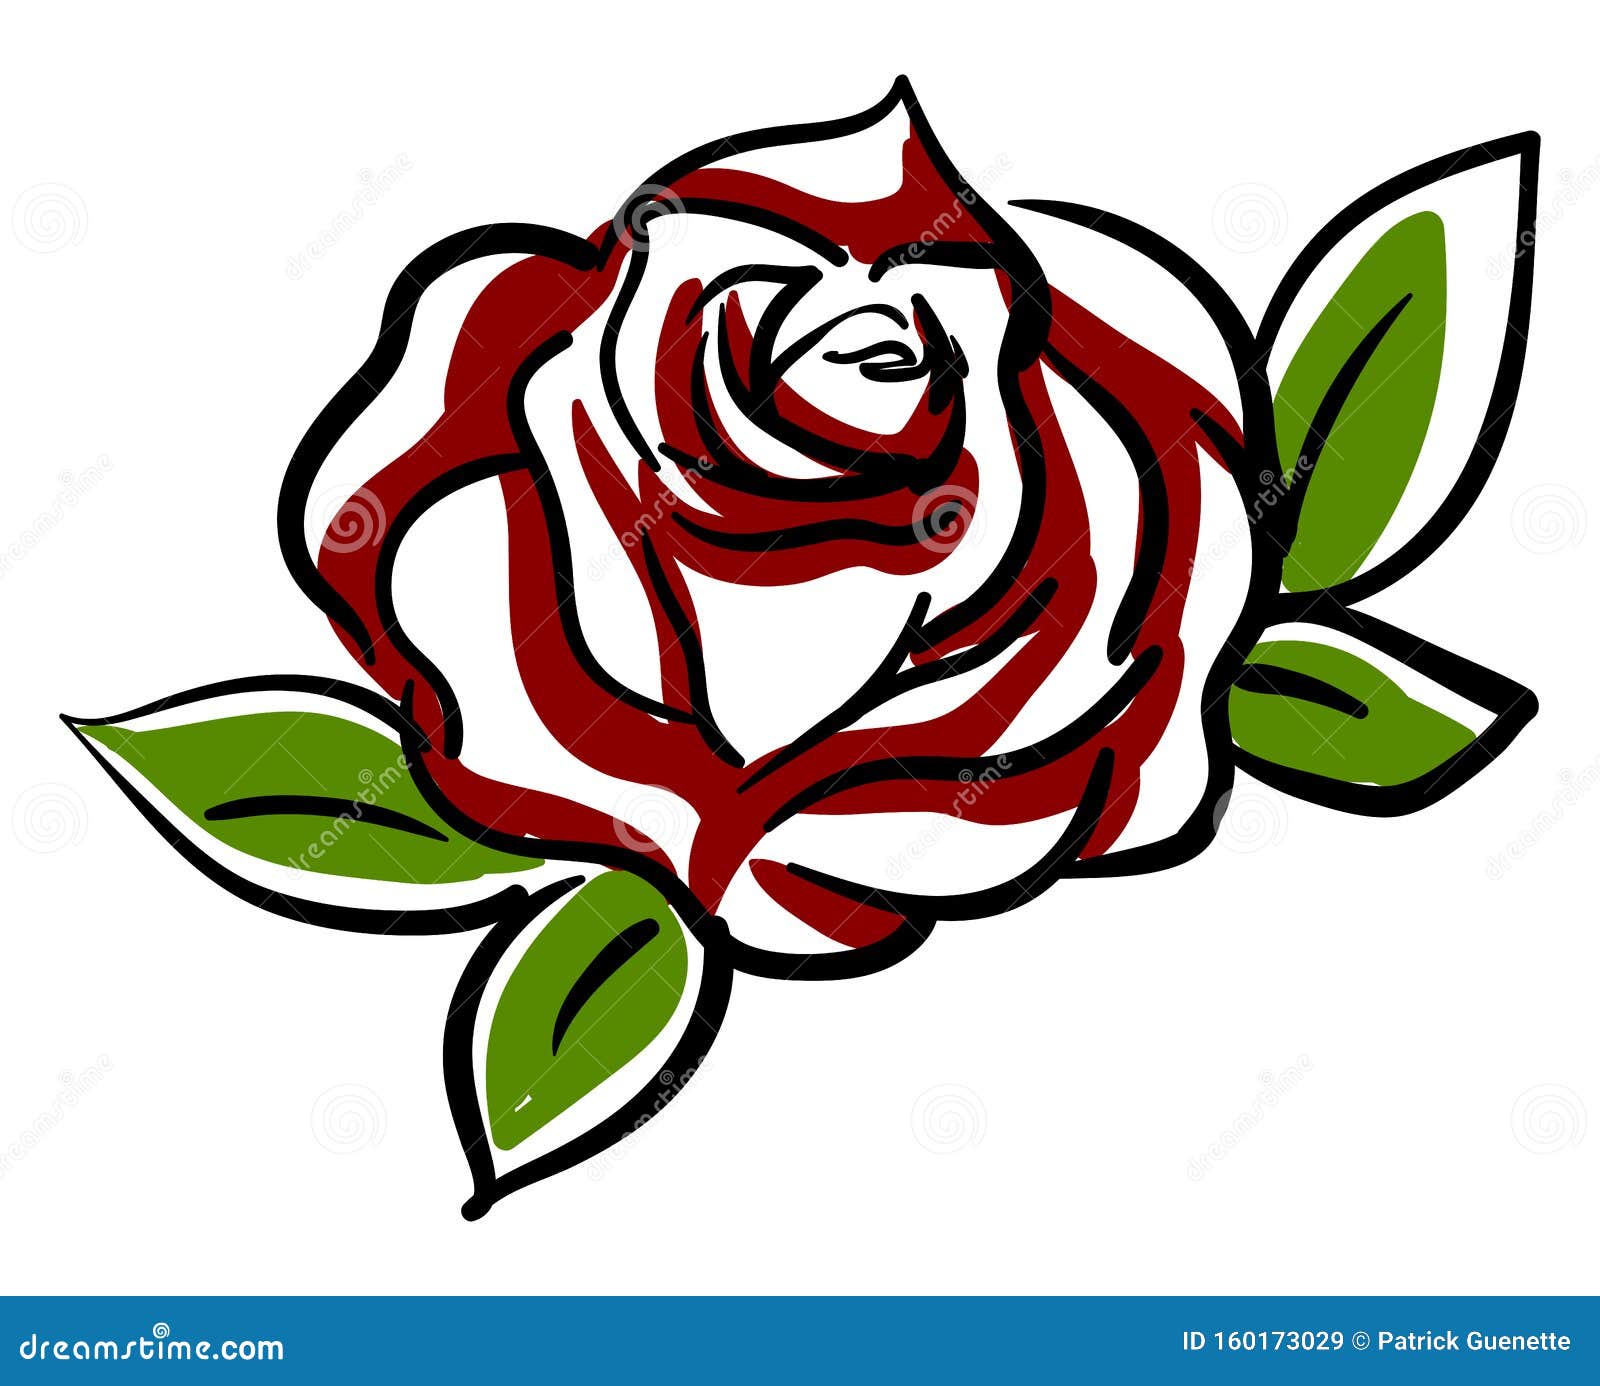 Dessin De Rose Rouge Illustration Vecteur Illustration De Vecteur Illustration Du Floral Detaille